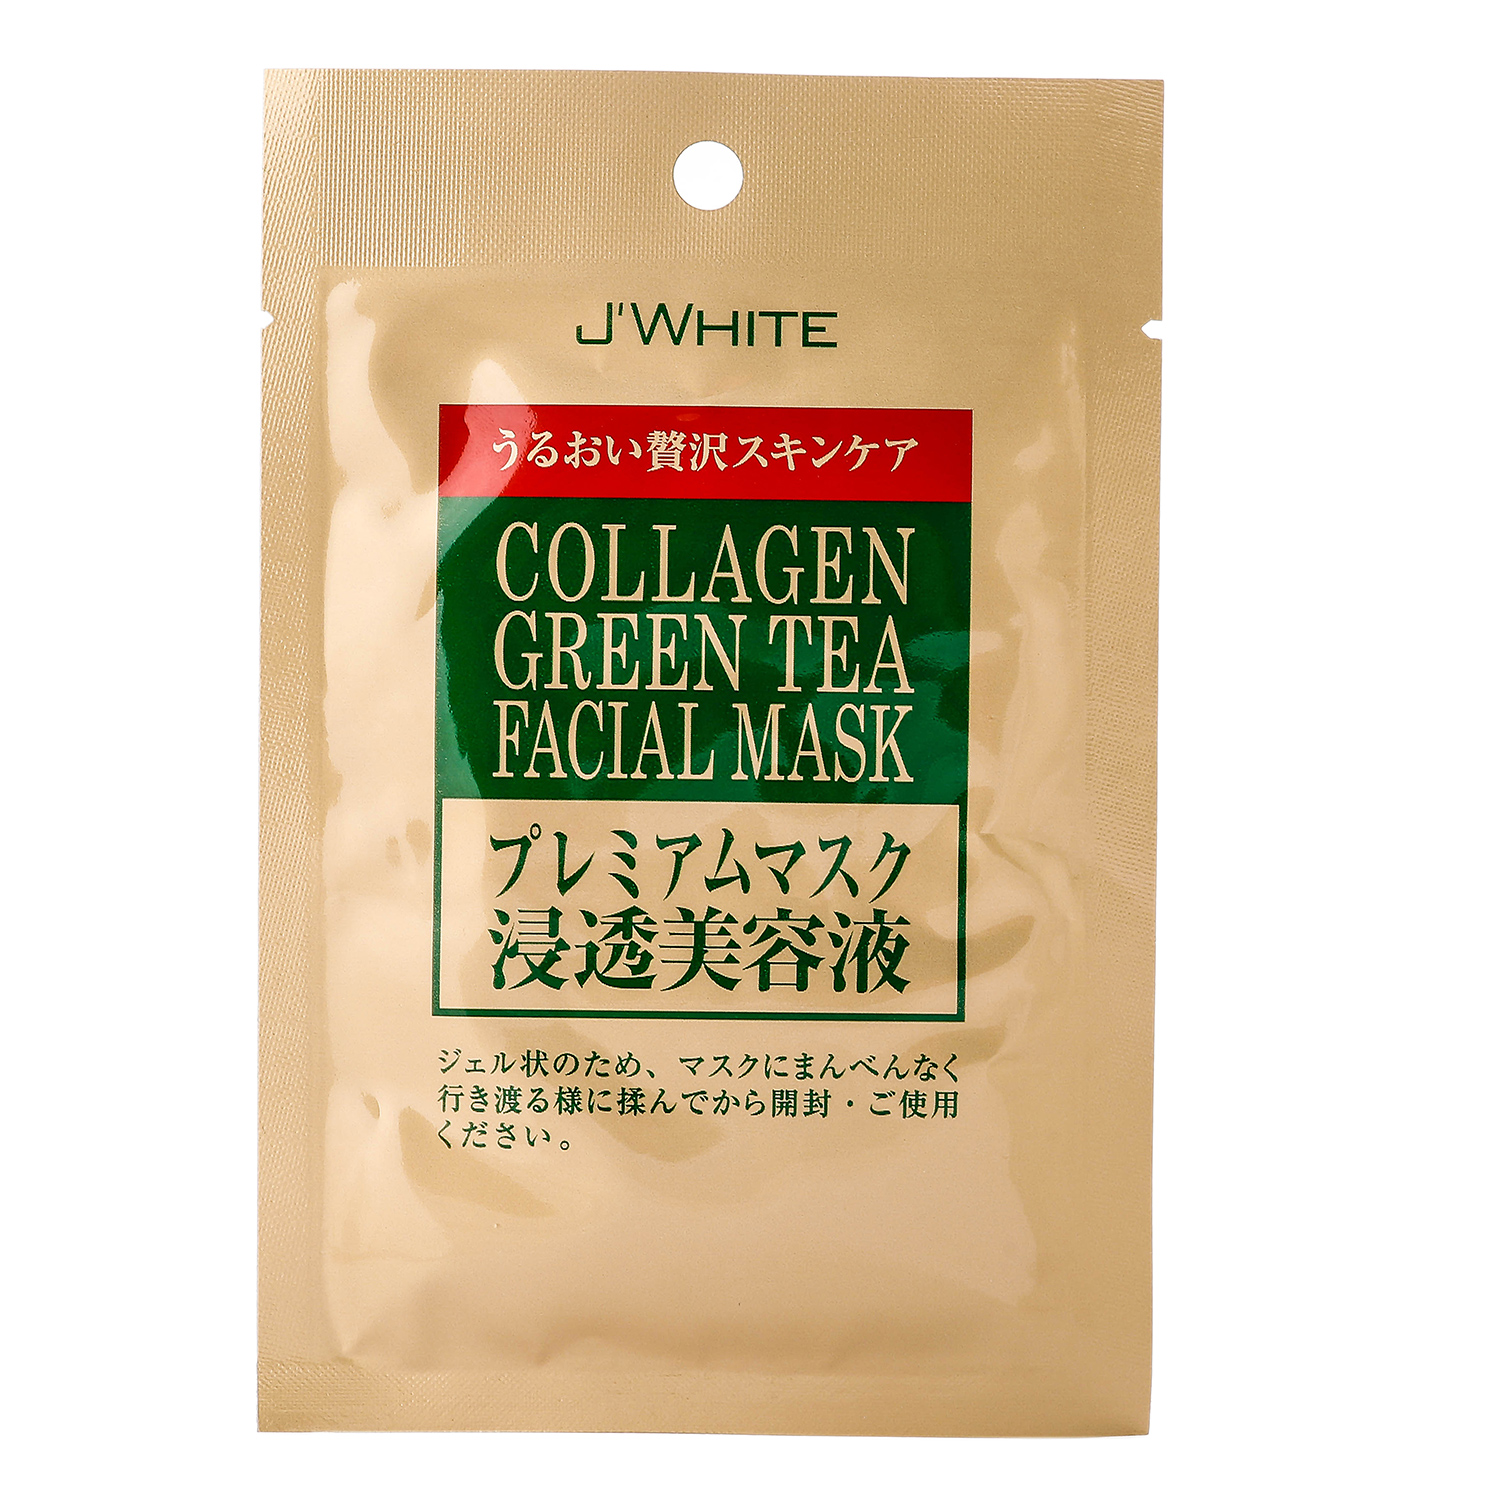 Đắp mặt nạ tinh chất Collagen trà xanh J'White 25g - Hàng Nhật nội địa